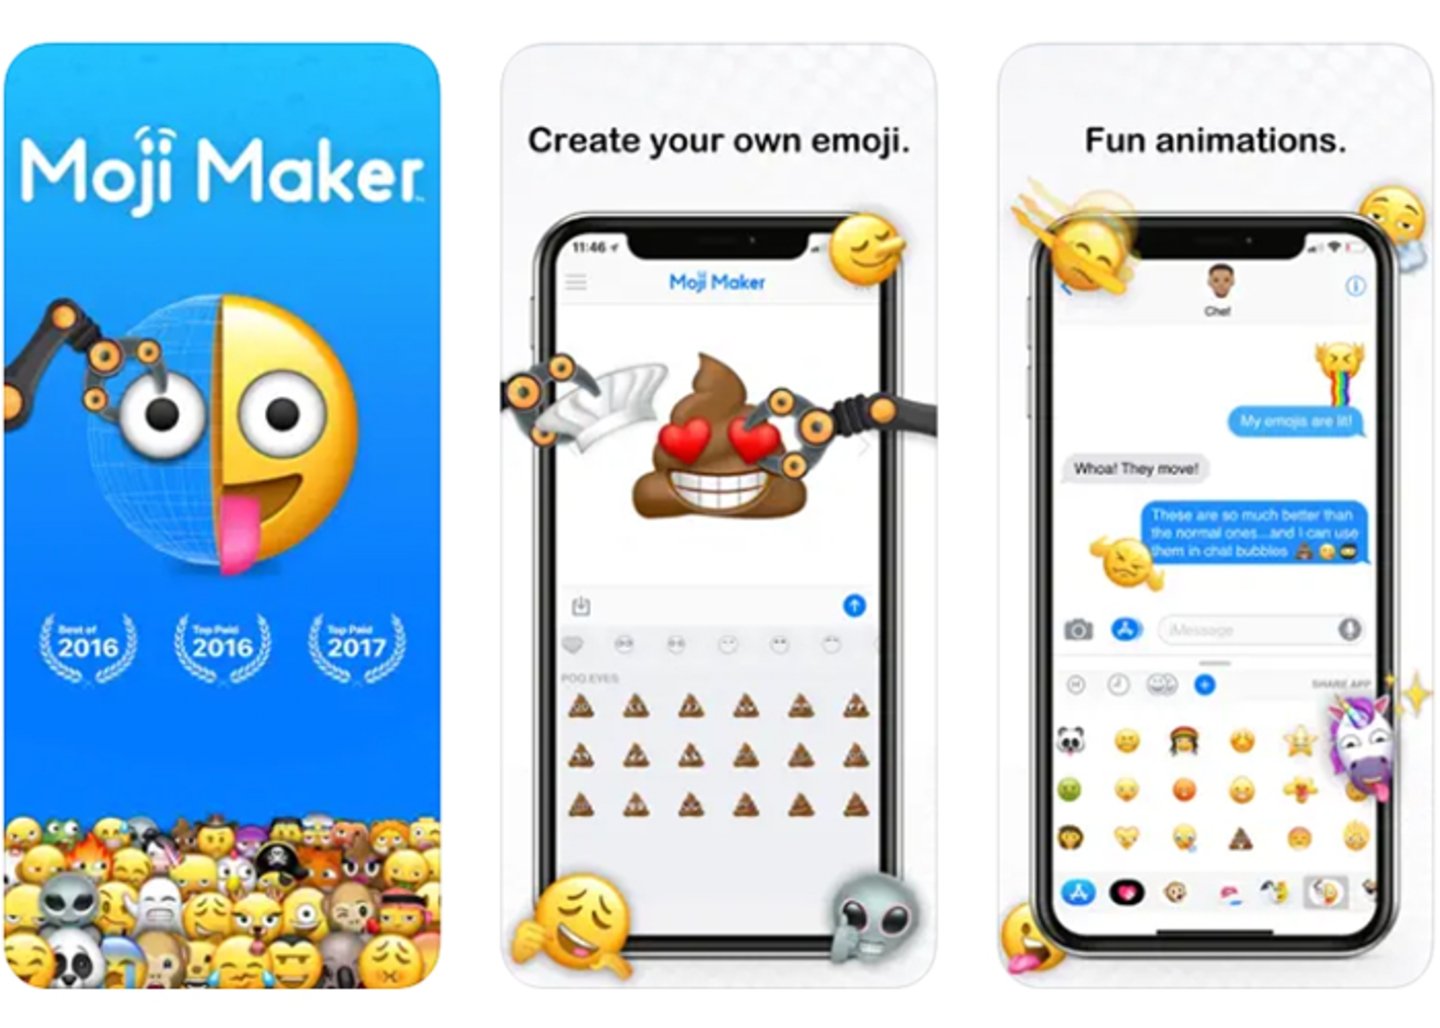 Crea tus propios emojis personalizados con Moji Maker